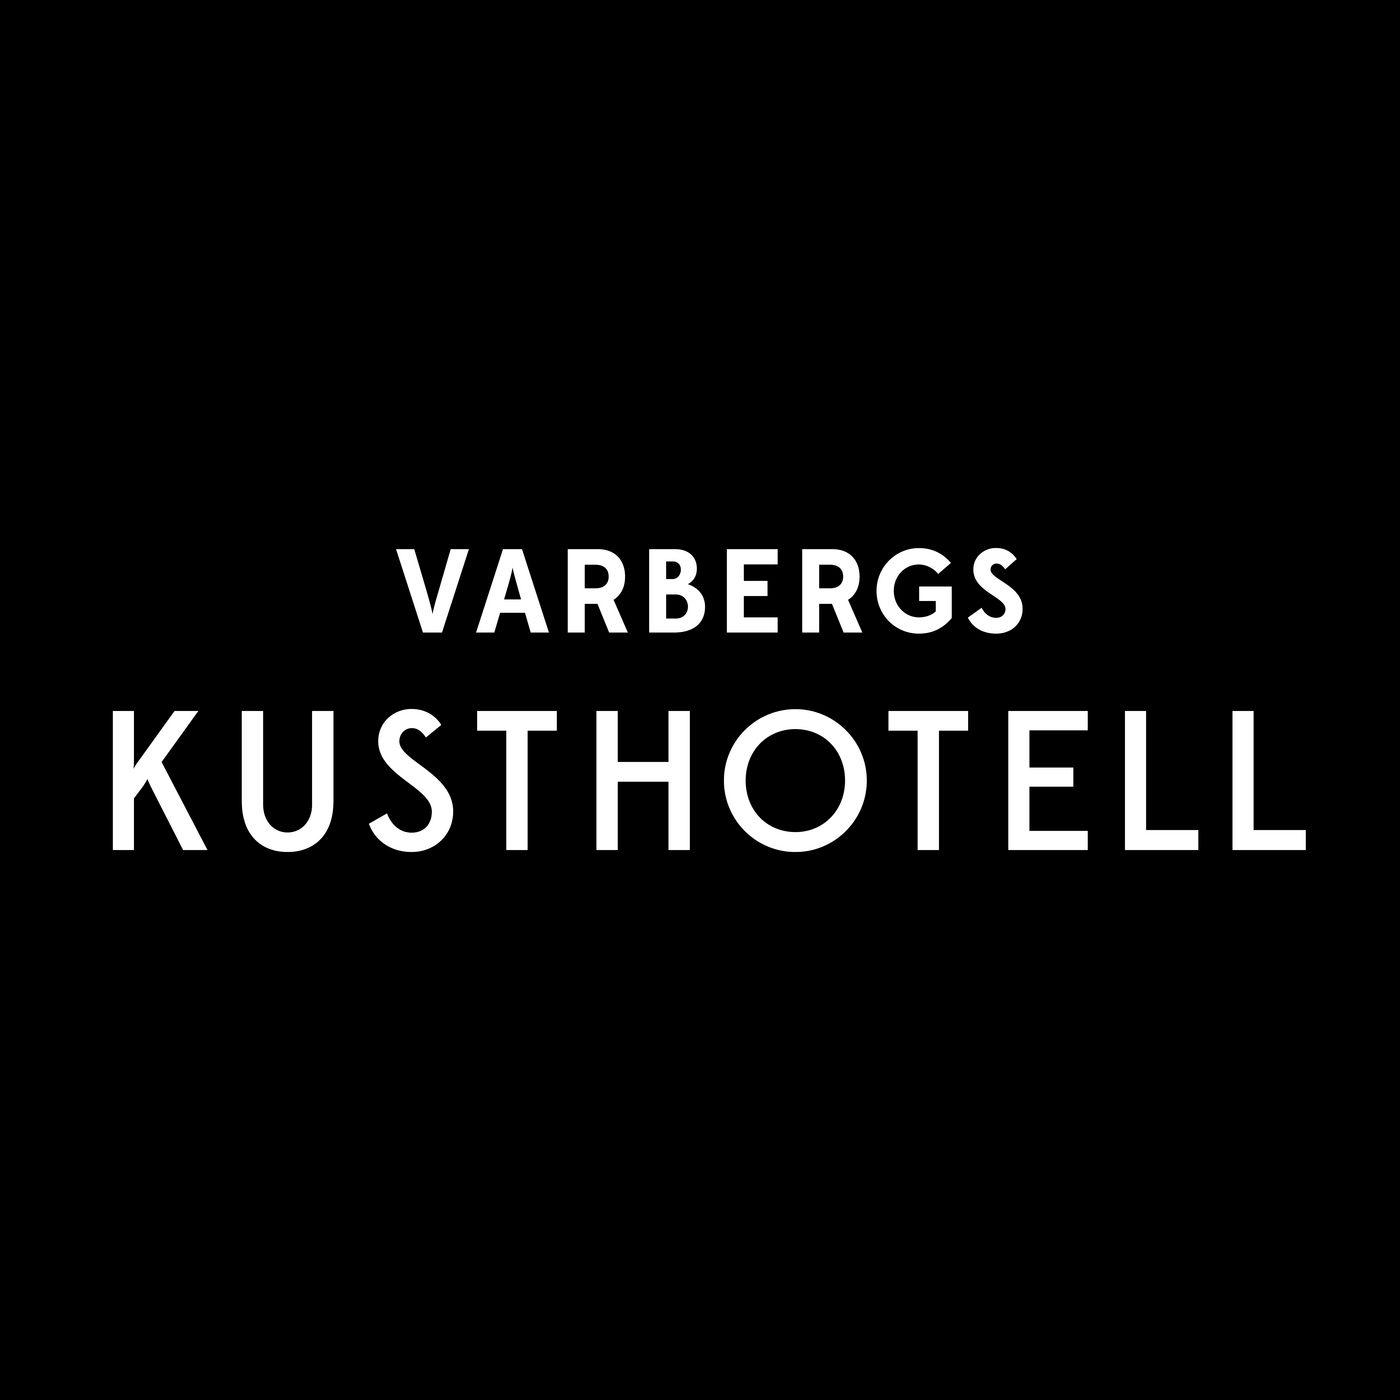 Varbergs Kusthotell - Vår Historia